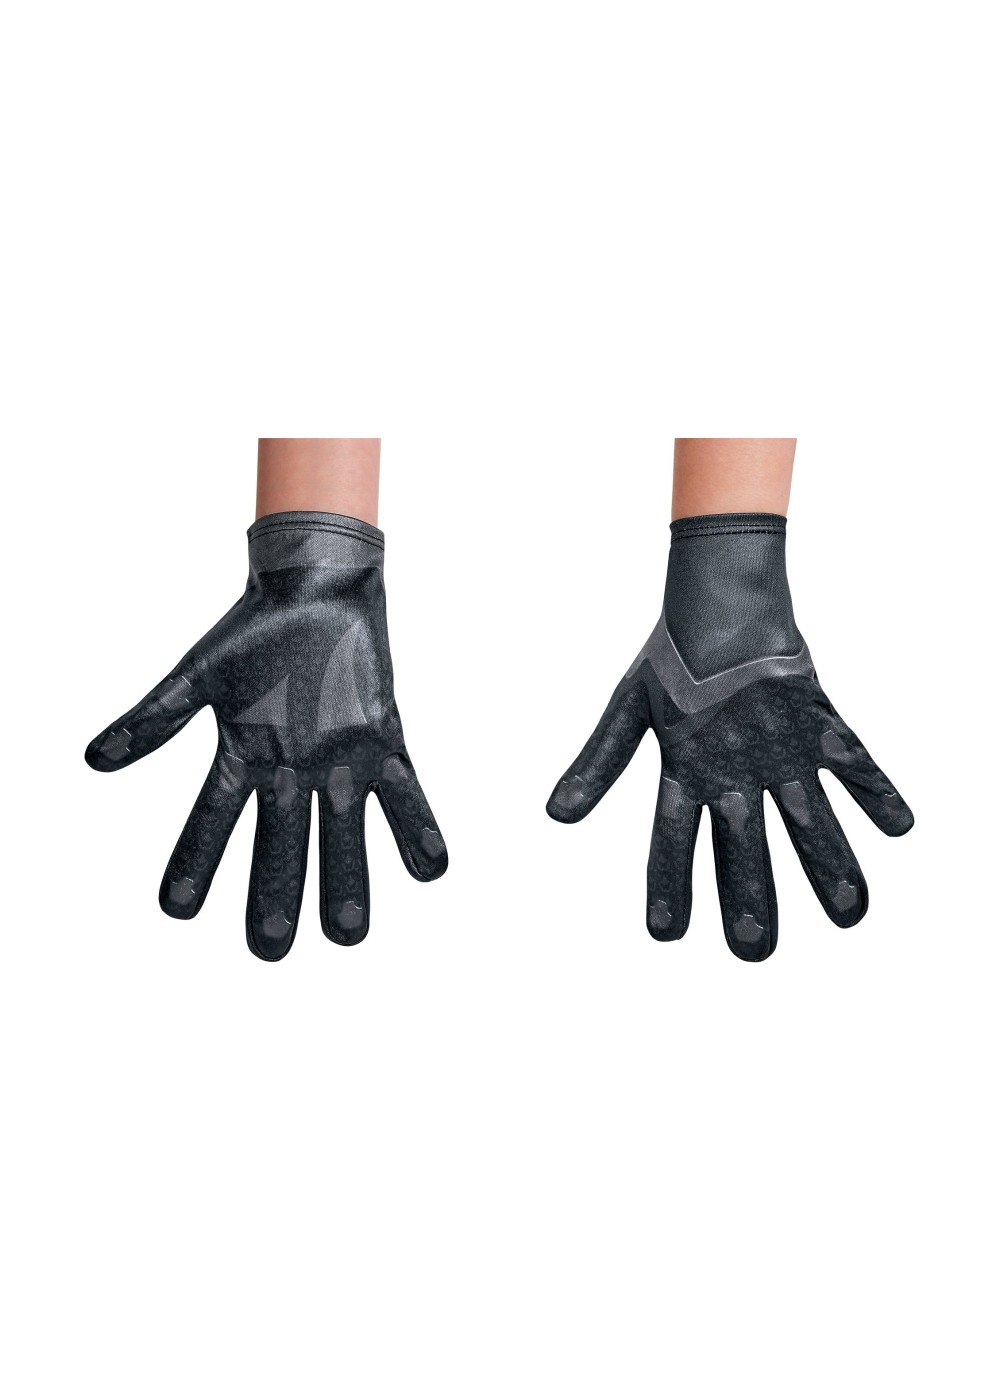 Power Rangers Movie Black Boys Costume Gloves